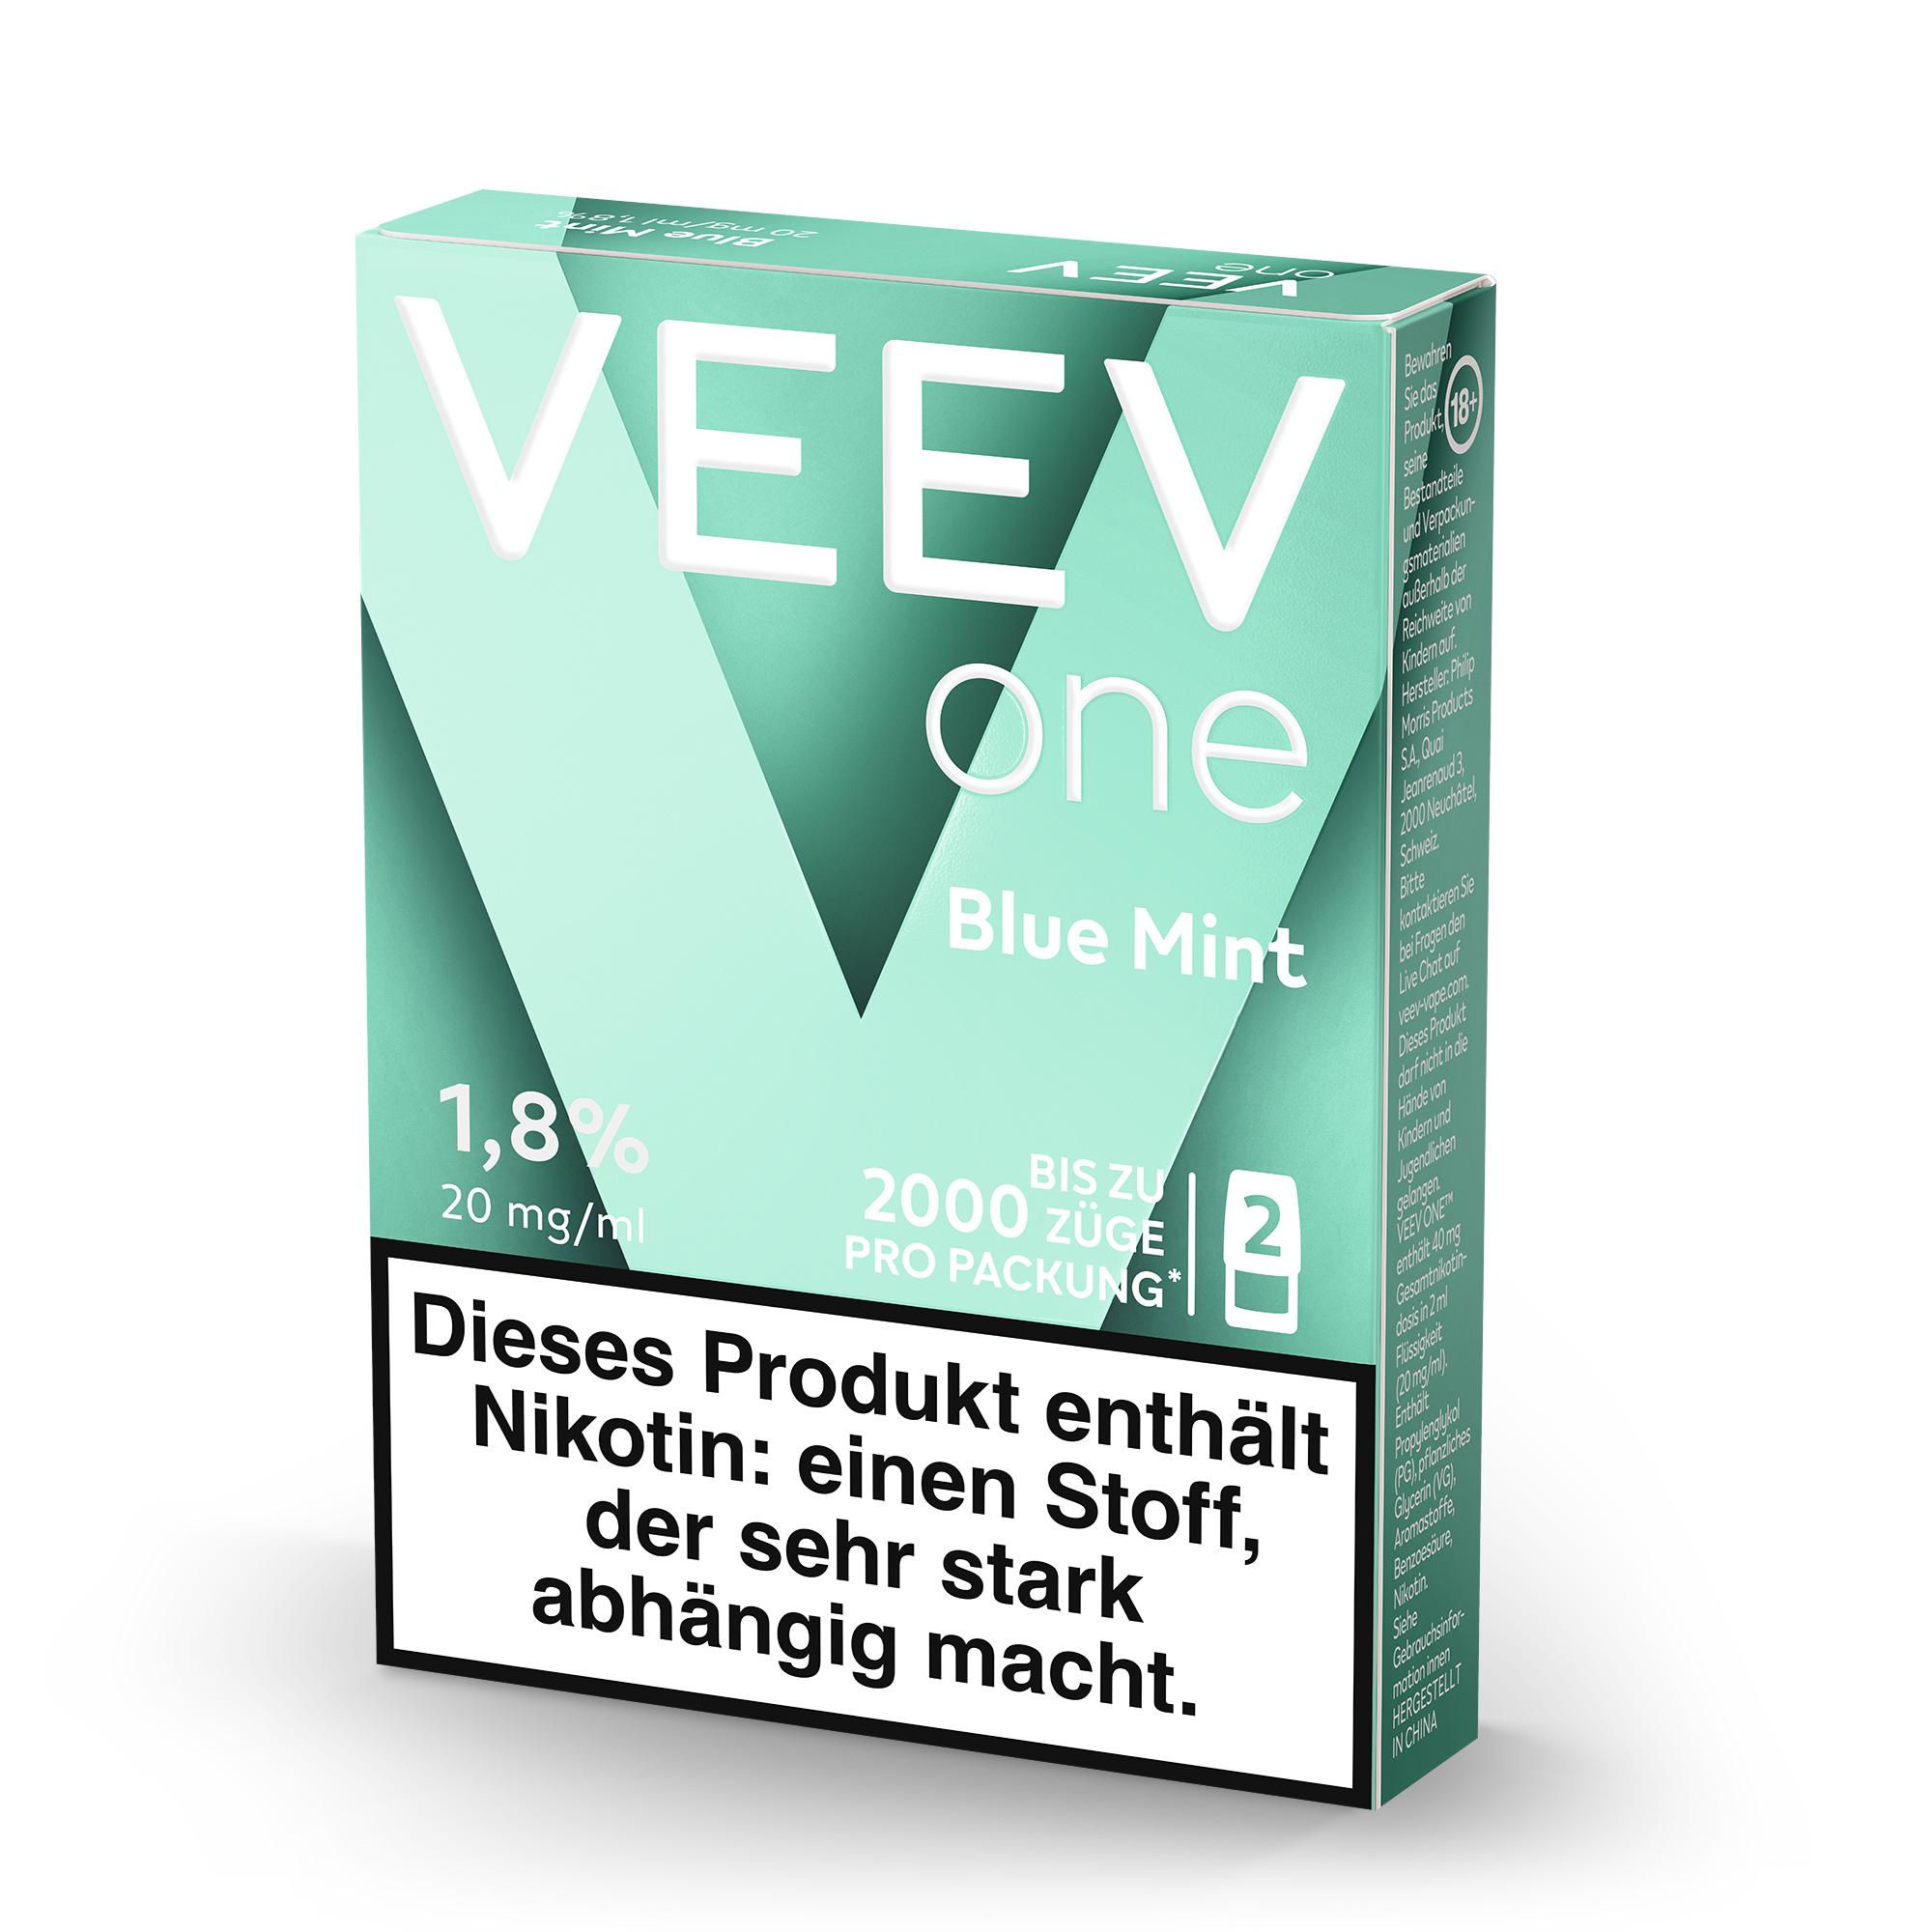 VEEV one Pods blue mint 2er